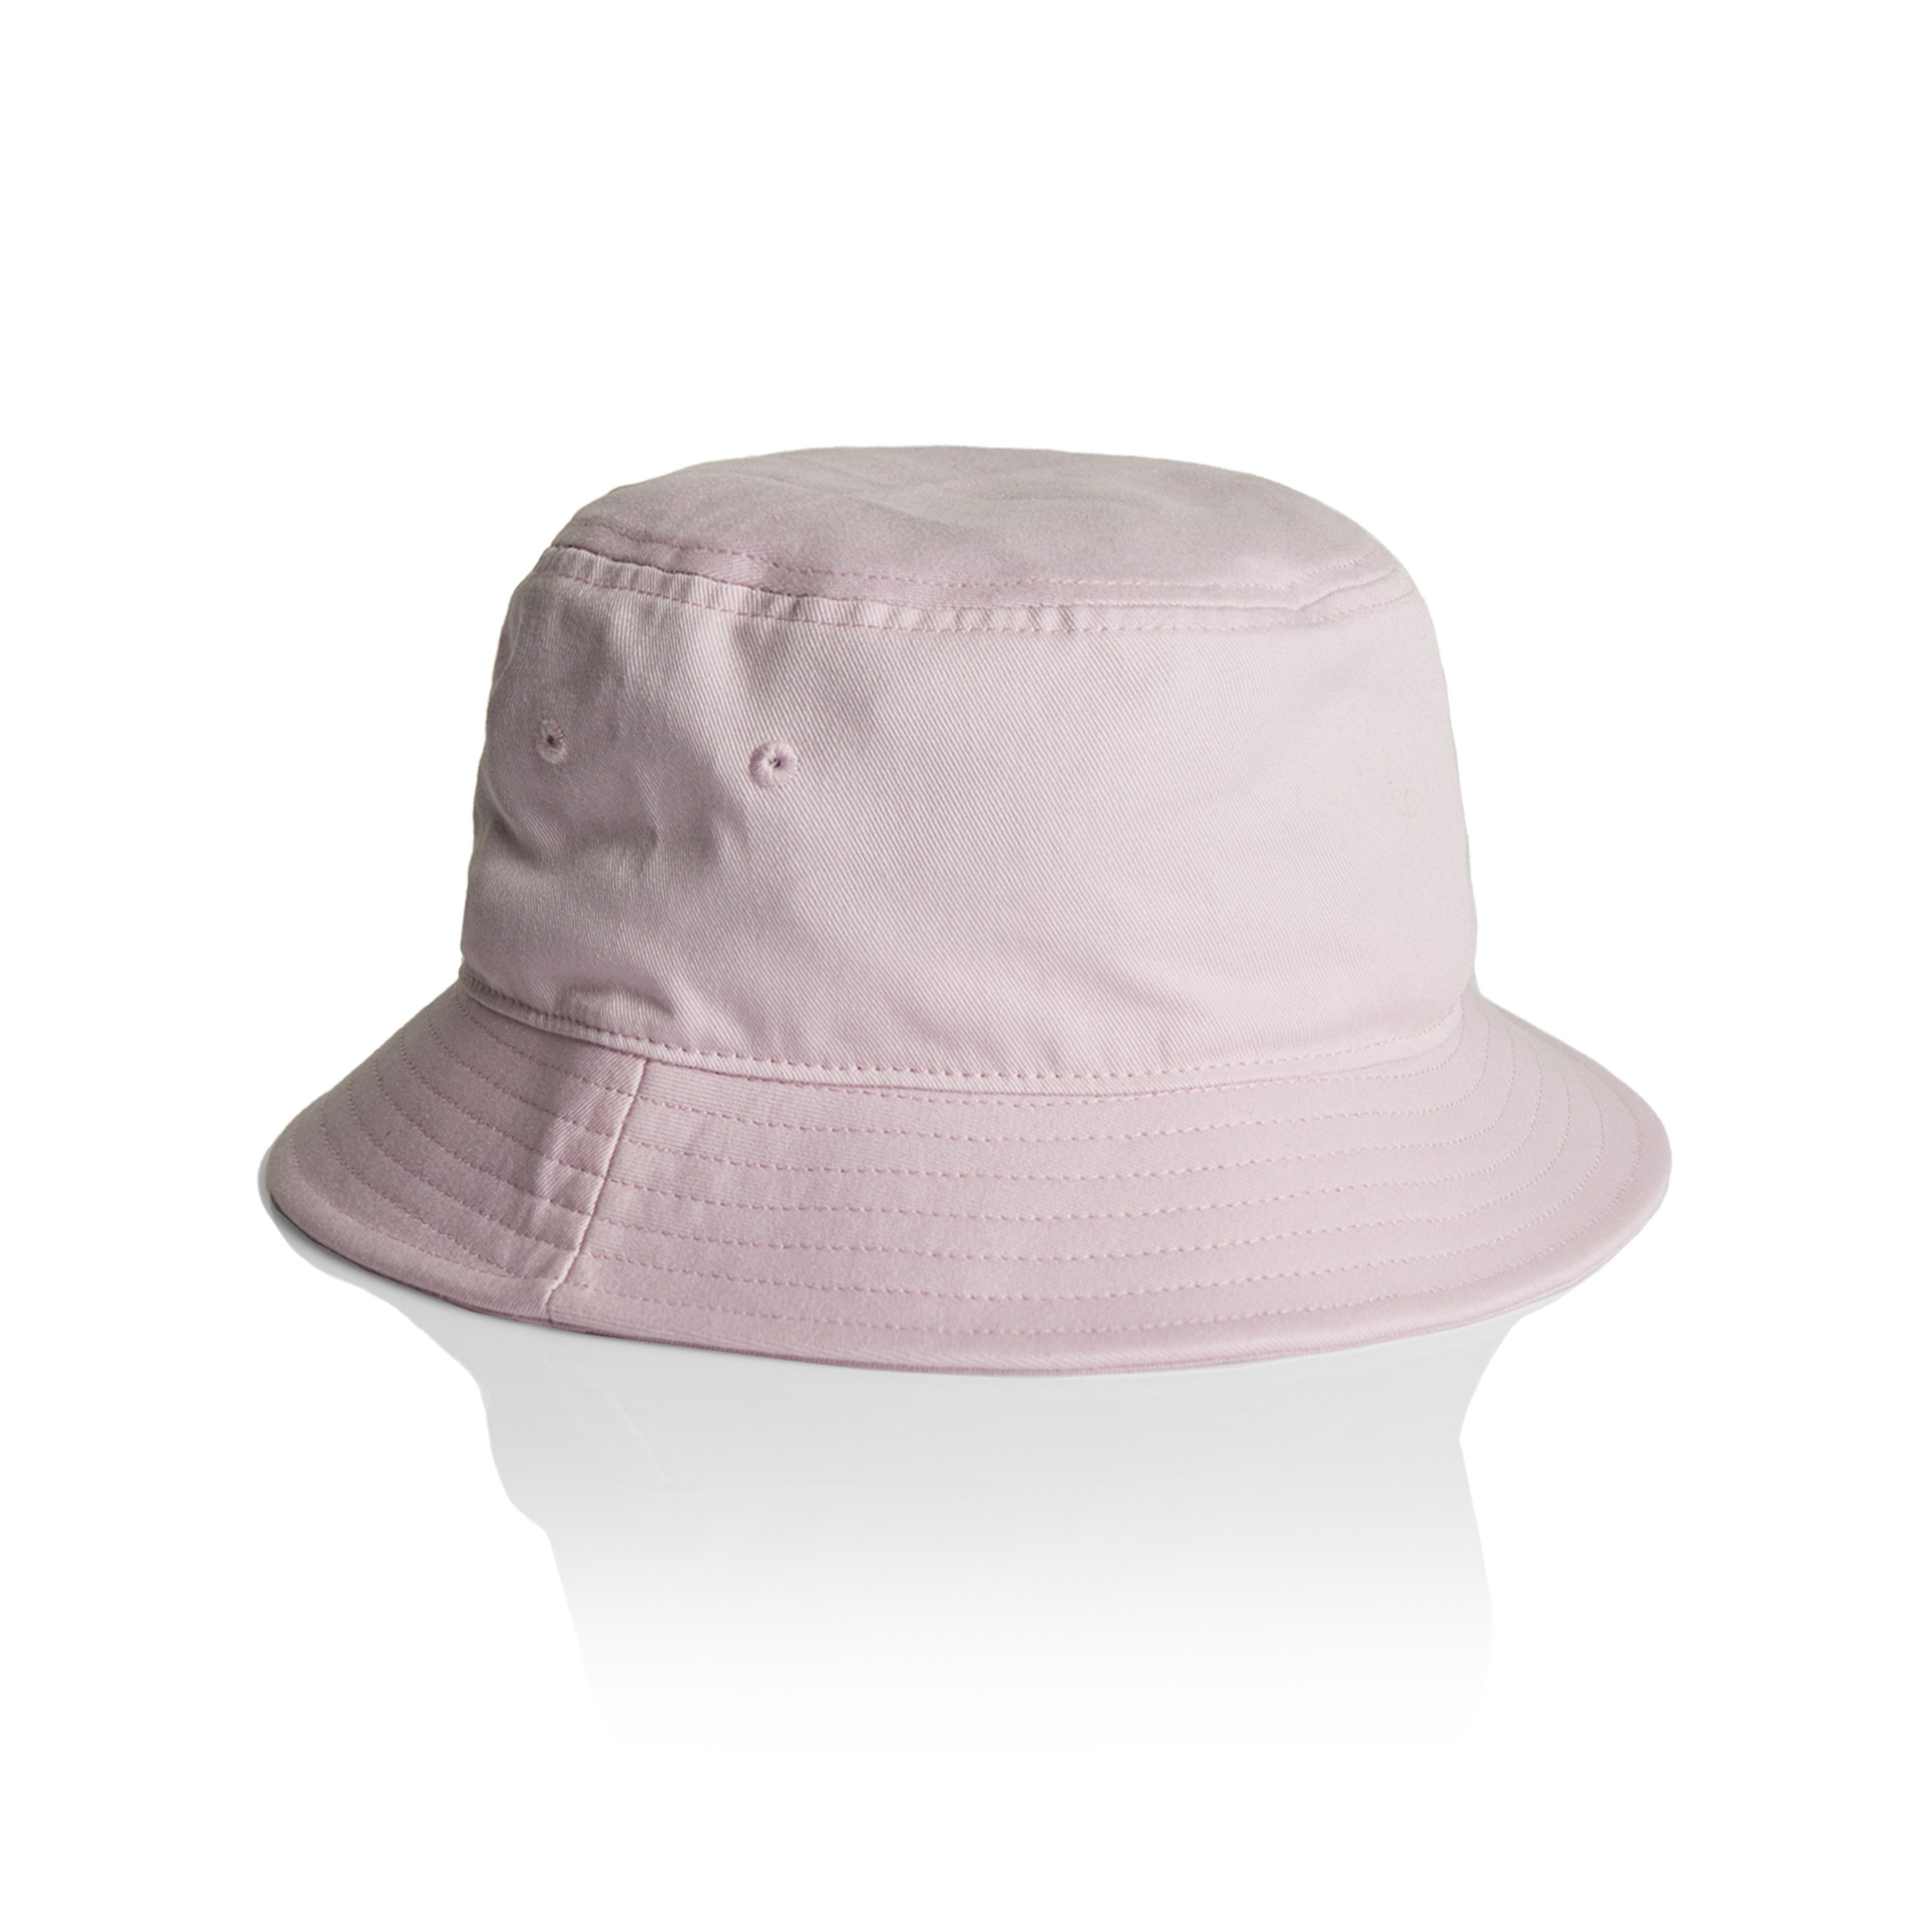 Royal/White - Bucket Hat Sandwich Design - Nublank Caps